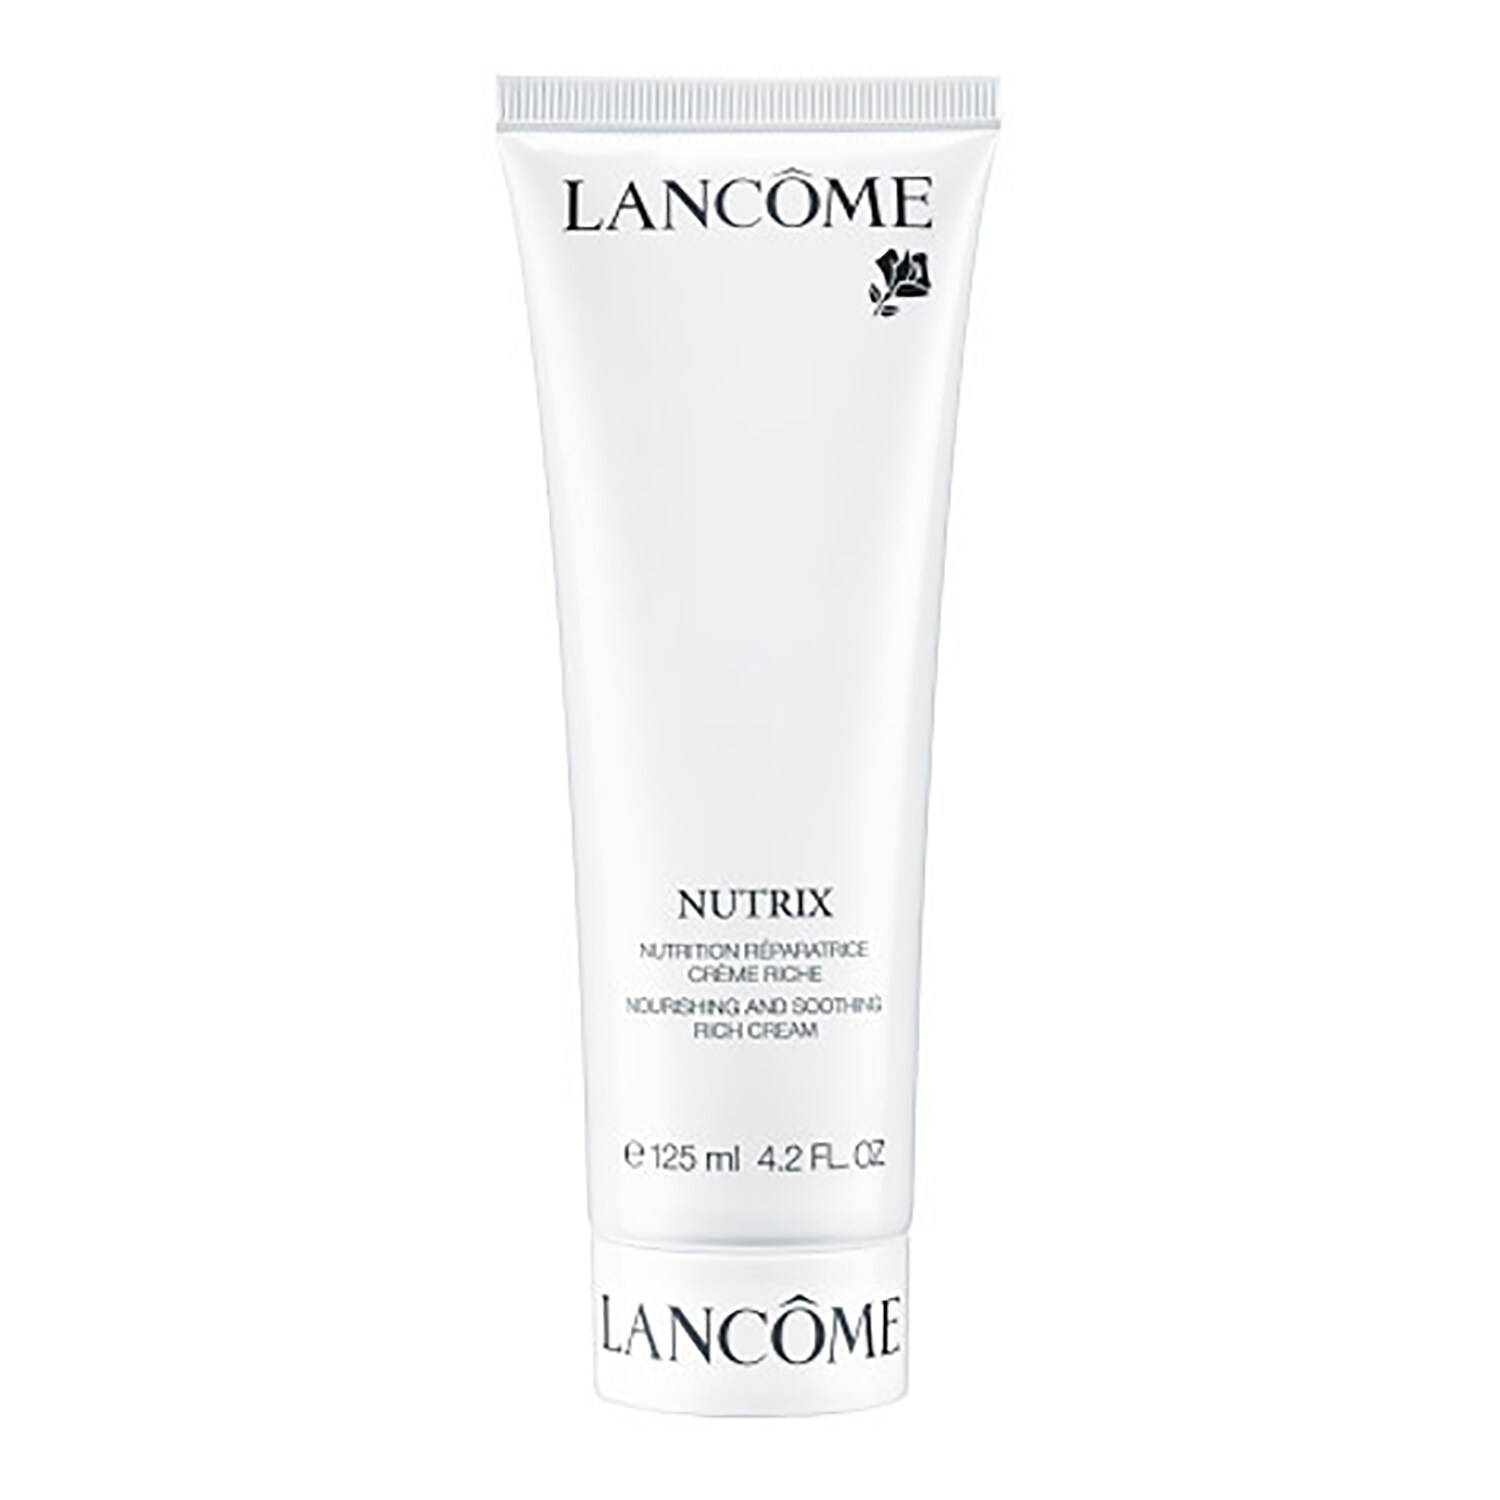 Lanc�me Nutrix Face Cream 125ml